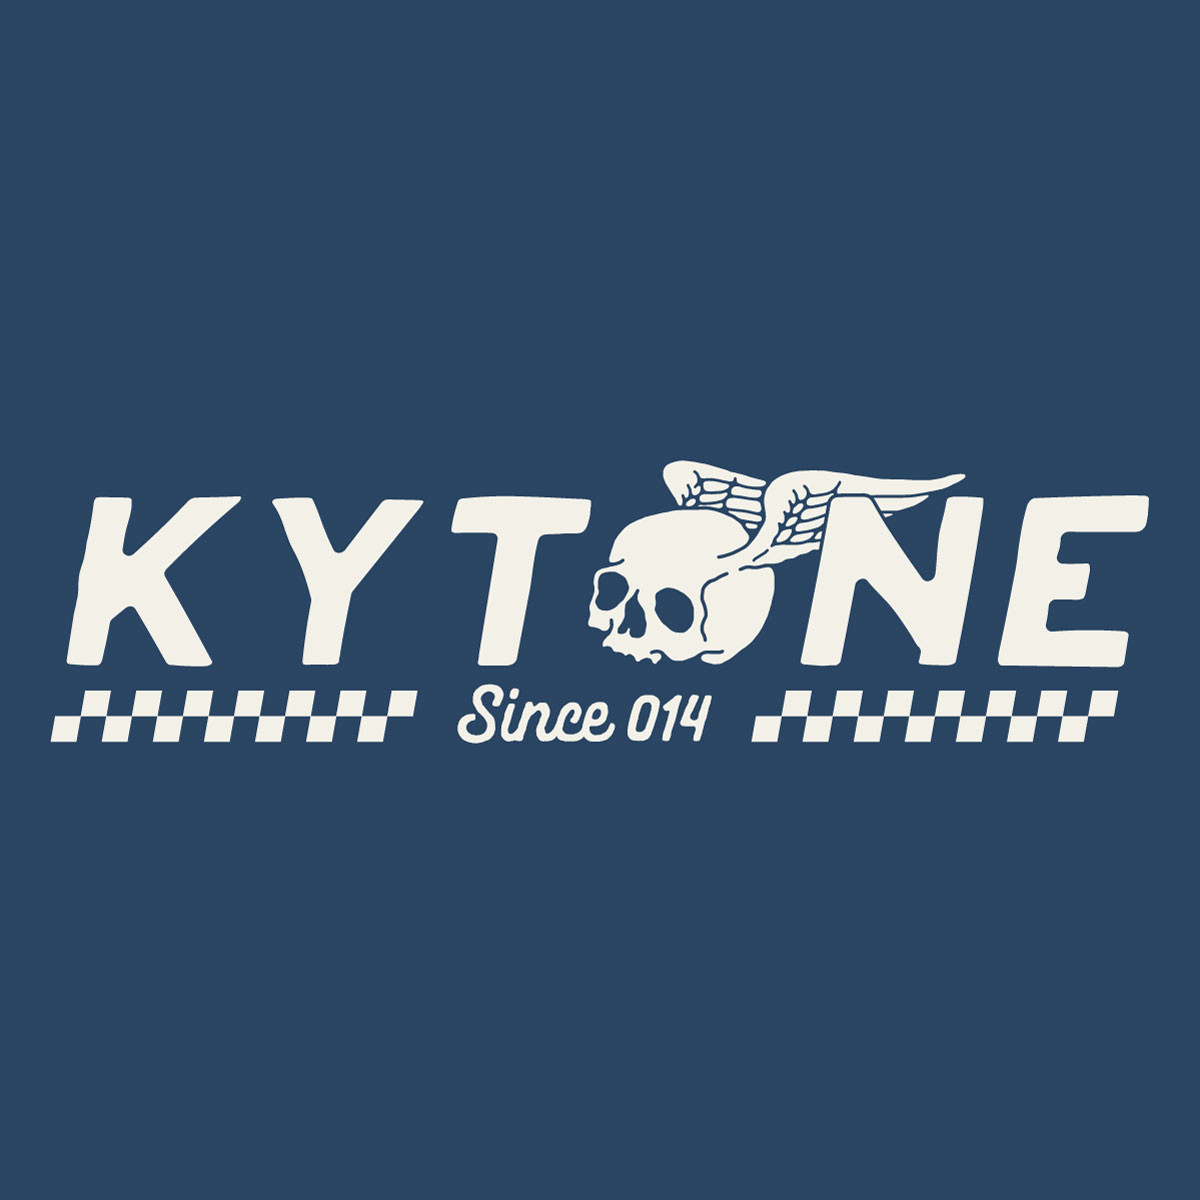 info@kytone.com